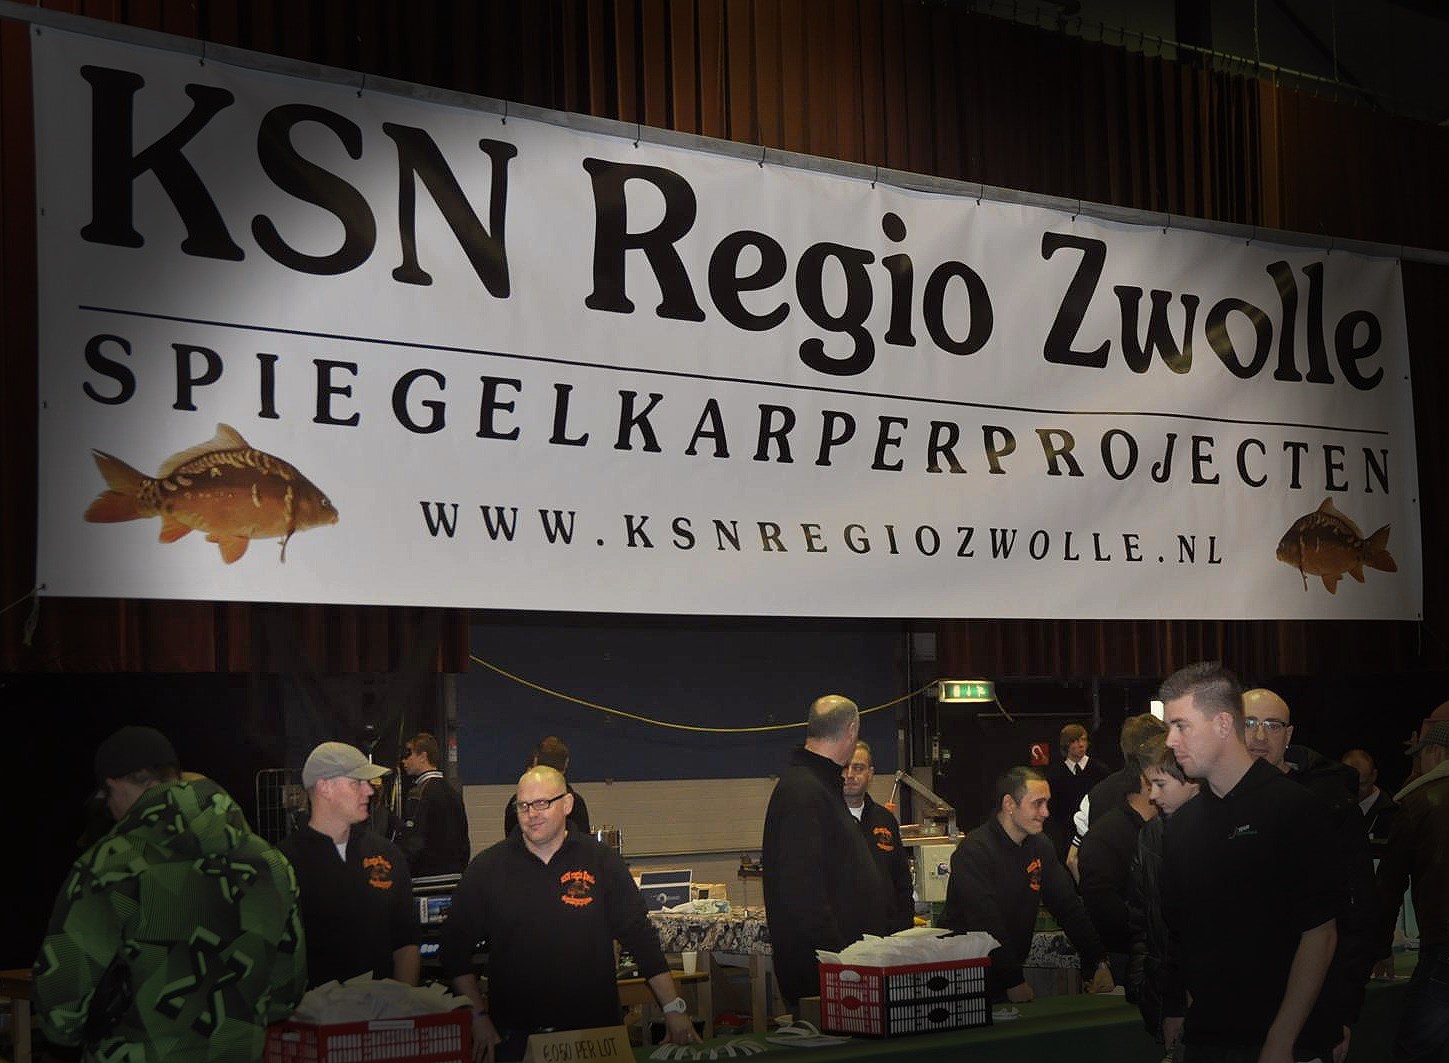 Introductie De KSN Regio Zwolle. Eind jaren tachtig was het vissen in Zwolle bij de uitstroom van de IJsselcentrale Harculo ontzettend populair.